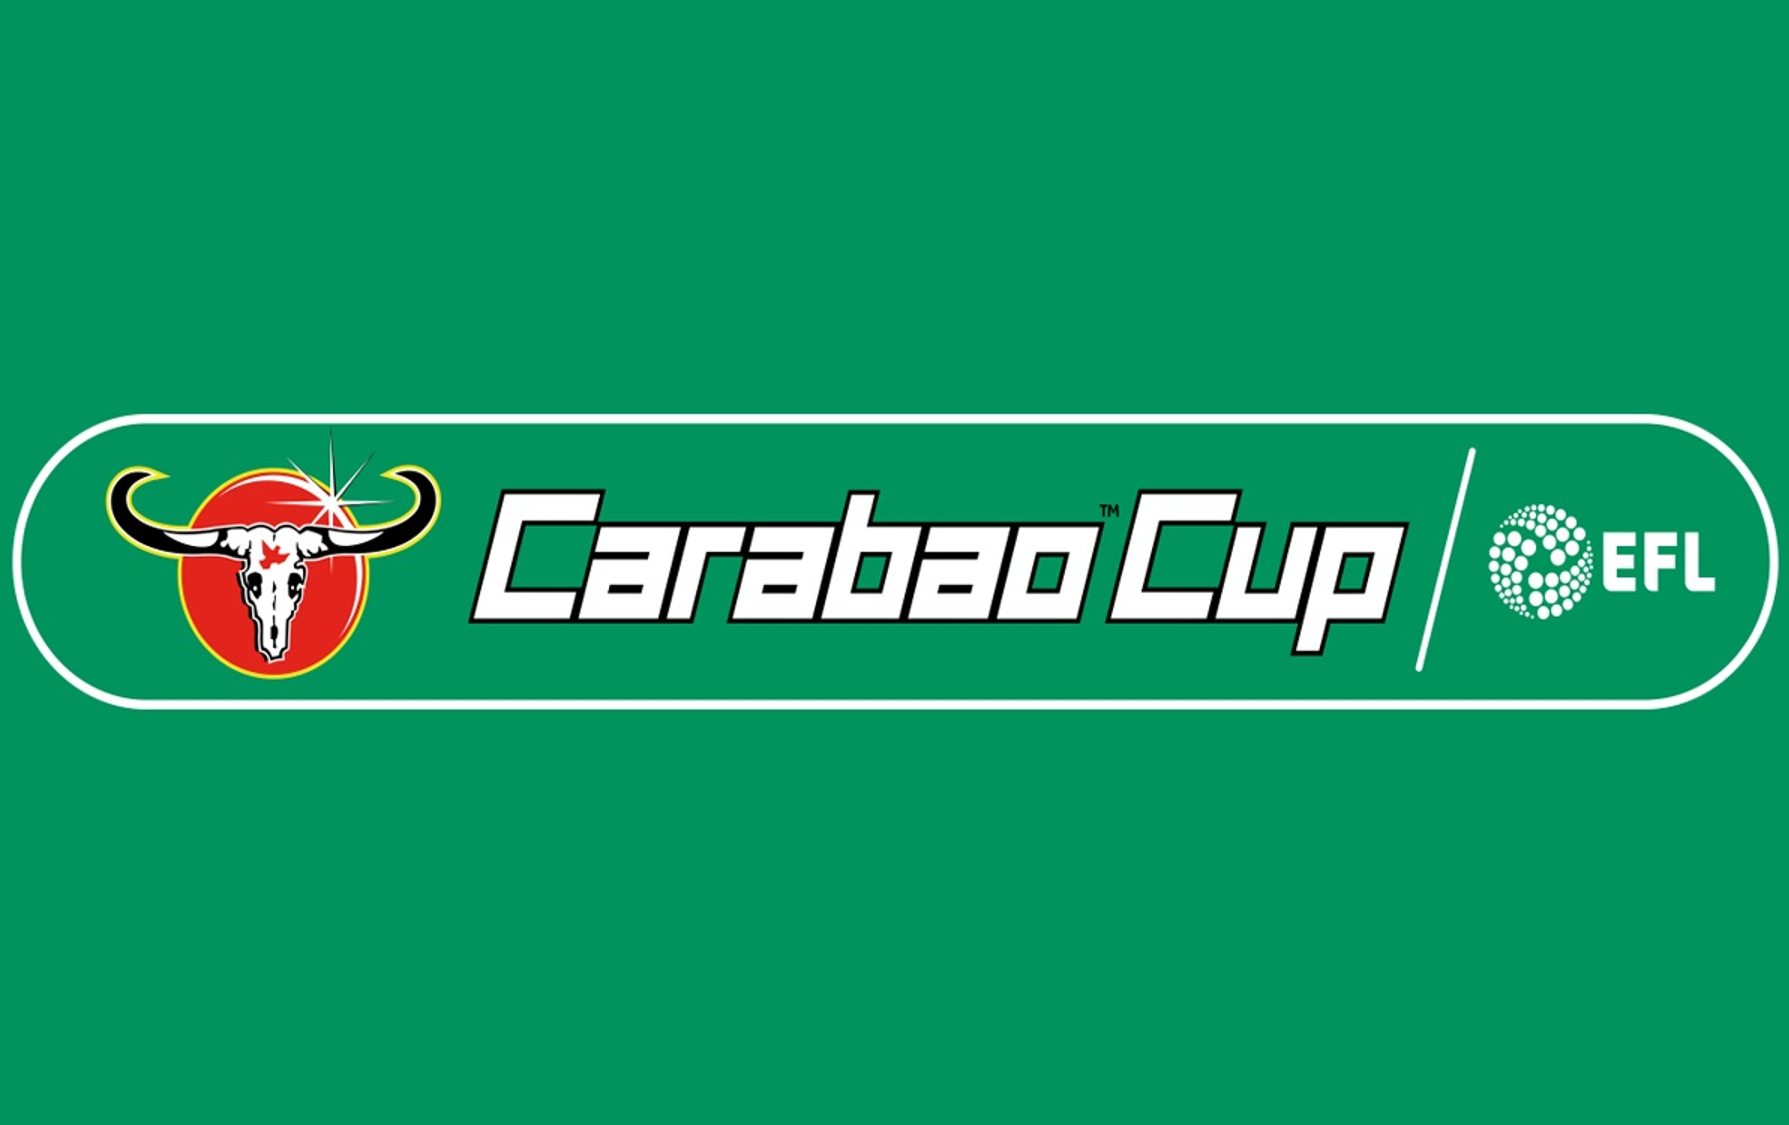 Carabao cup